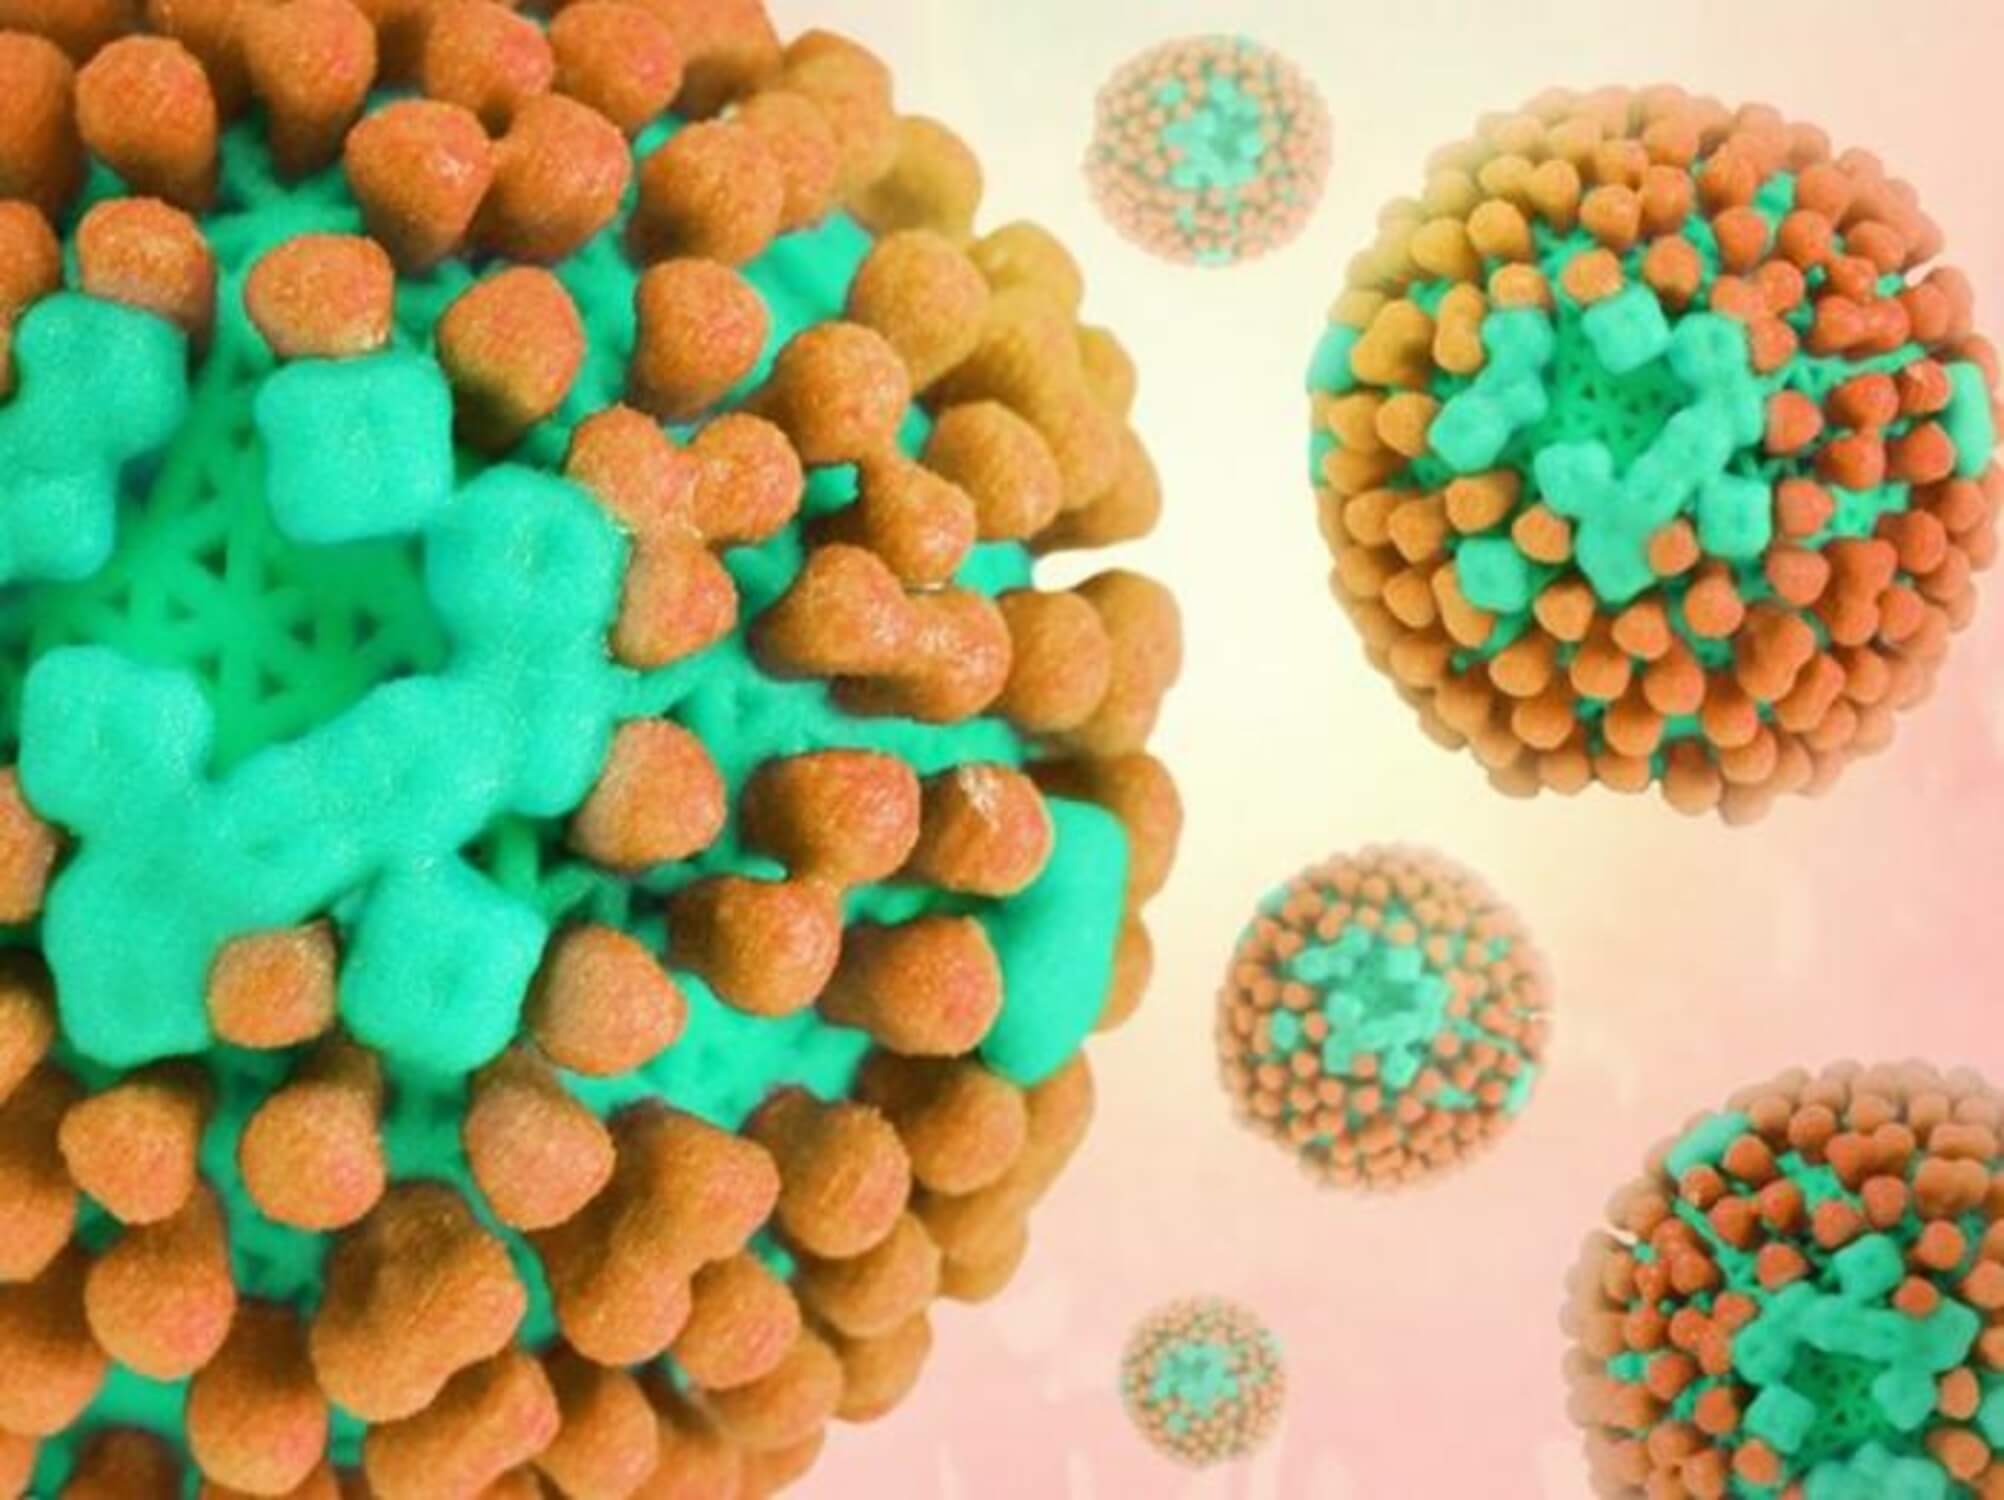 "Influenza Virus" by NIAID.